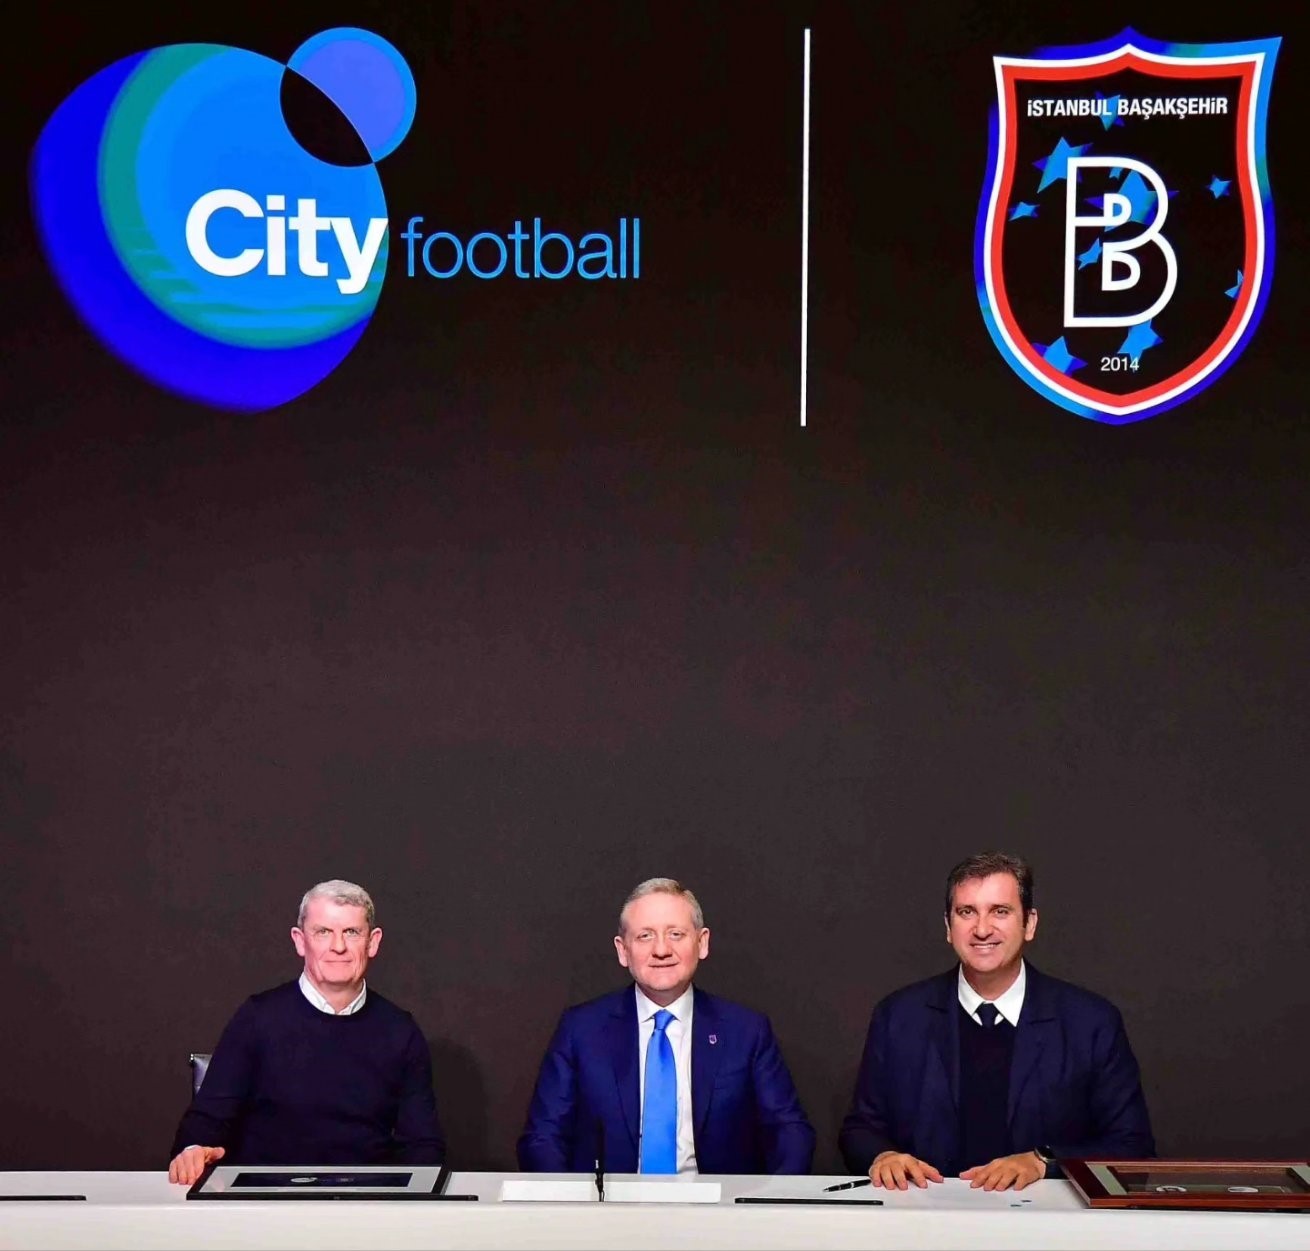 Başakşehir, City Football Group (CFG) ile iş birliği anlaşması imzaladı
